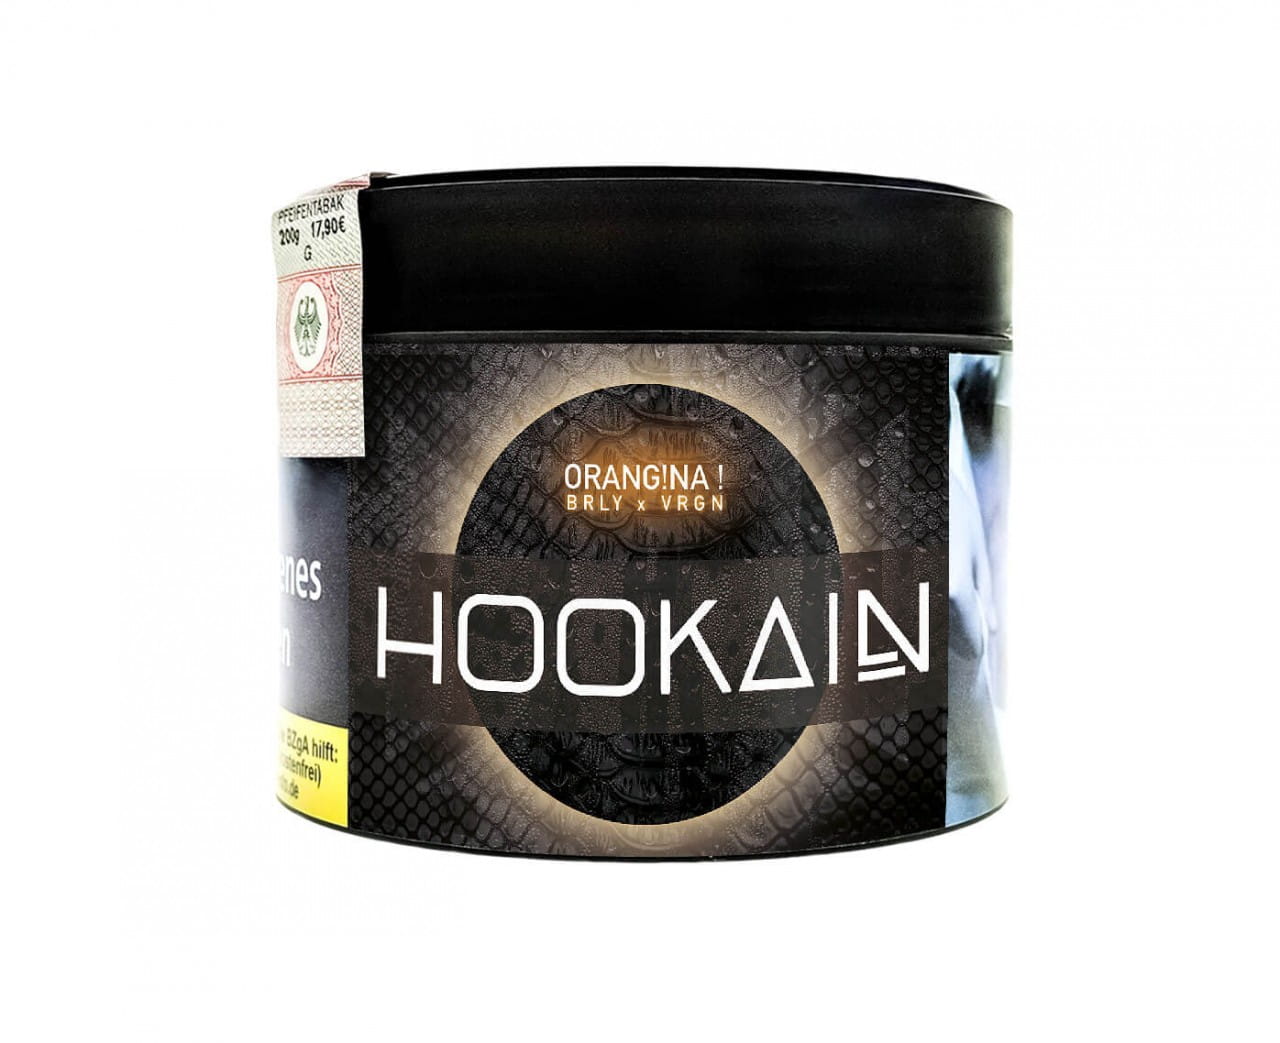 Hookain Burley Tabak - Orangina 200 g unter ohne Angabe